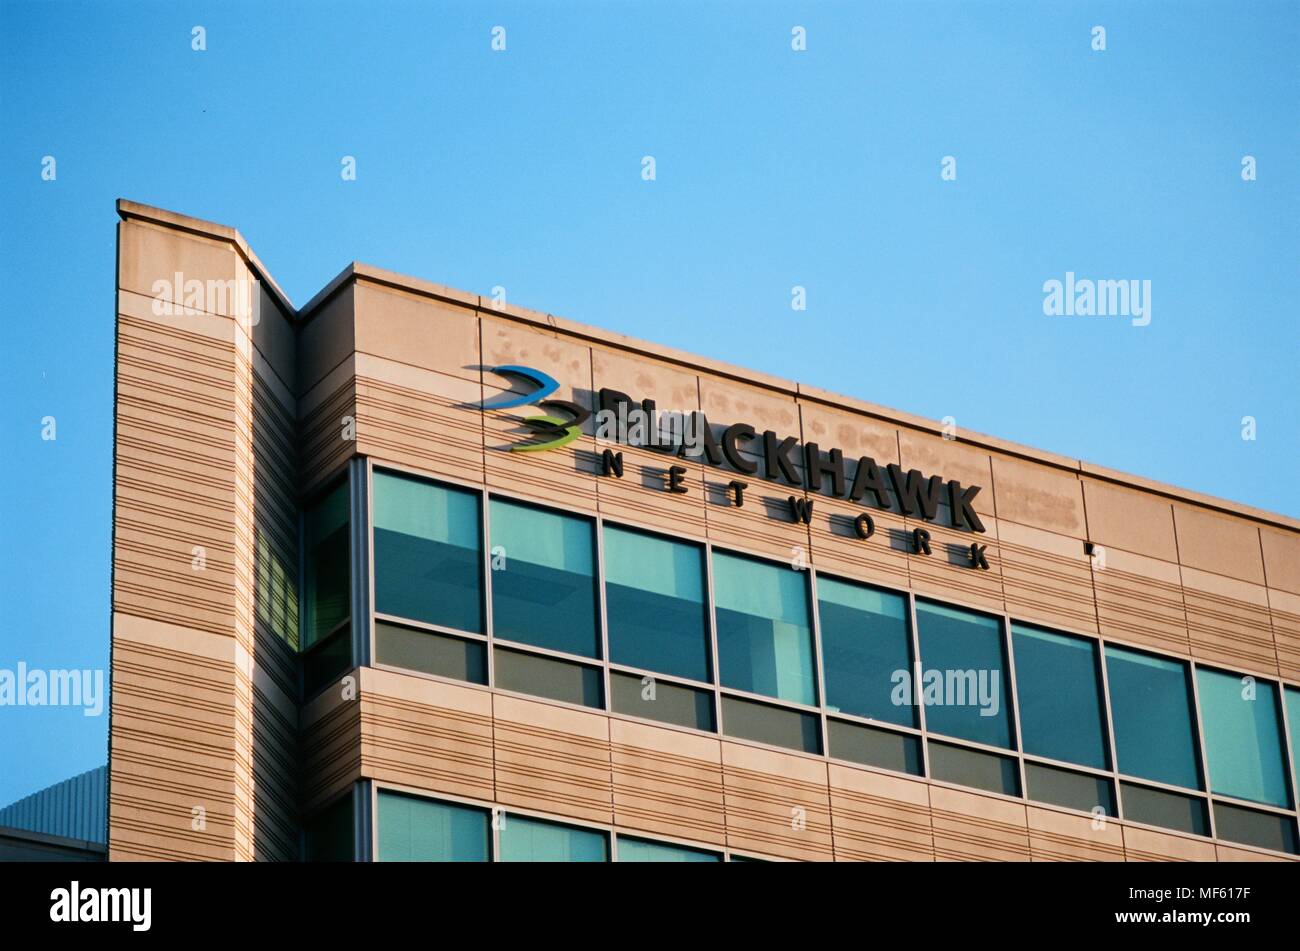 In der Nähe von Zeichen mit Logo für Software Firma Blackhawk Netzwerk in Pleasanton, Kalifornien, 26. März 2018. () Stockfoto